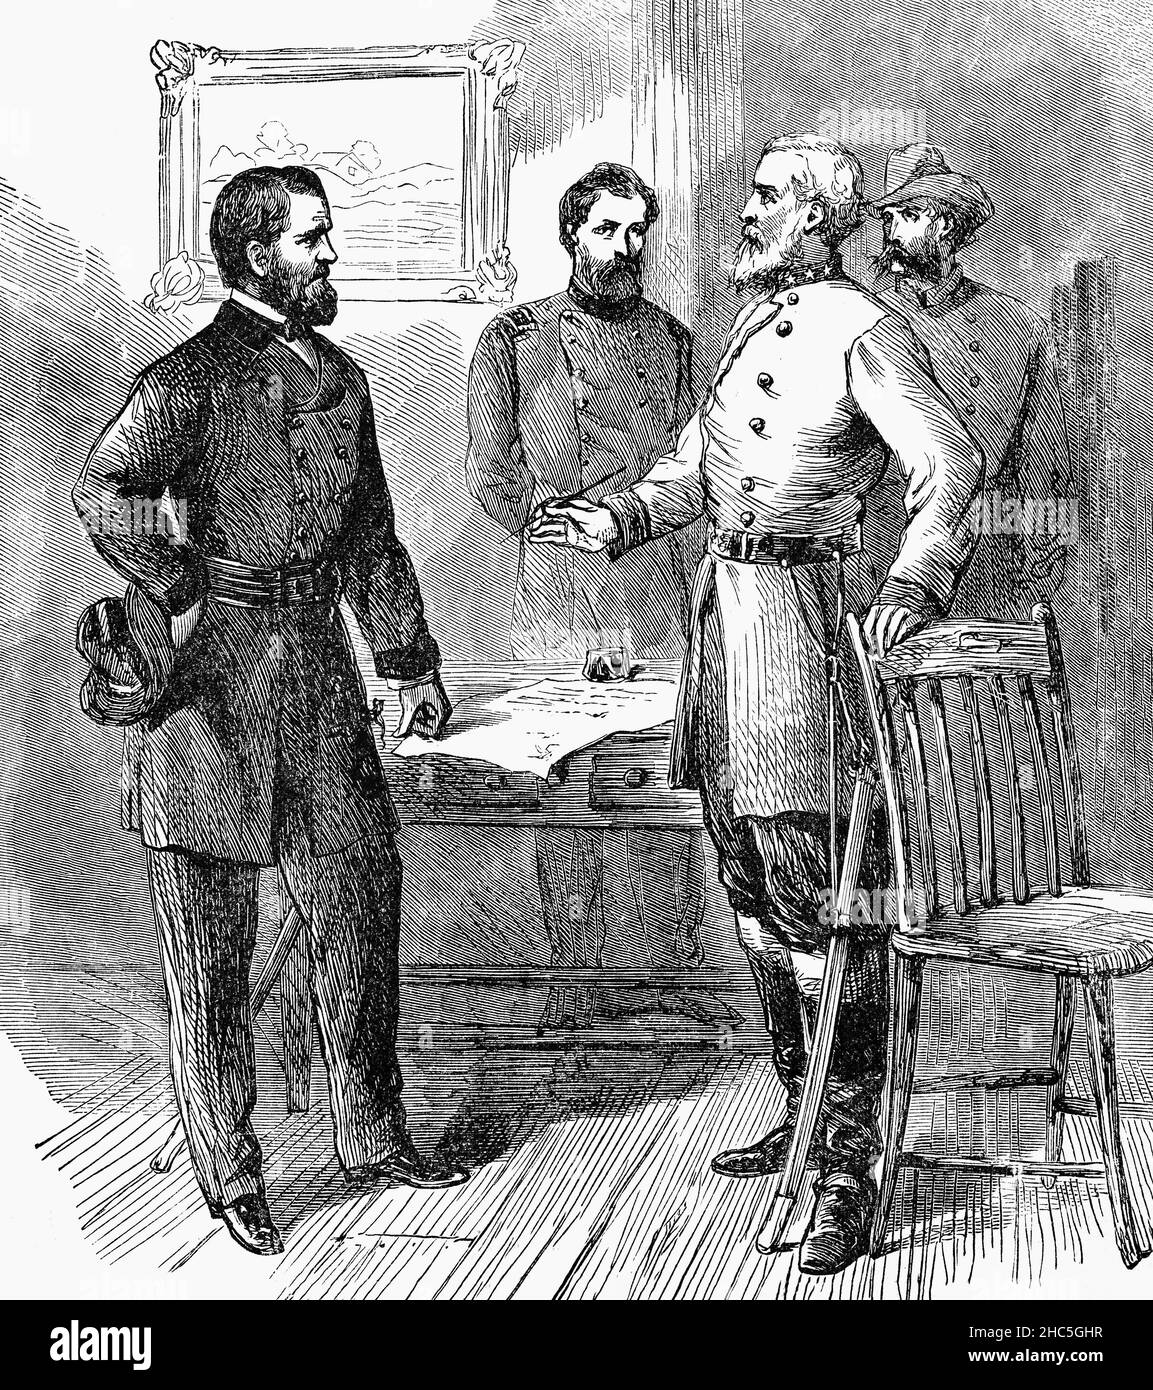 Illustration de la reddition de l’armée de Virginie du Nord par le général Robert E. Lee au Lieutenant général Ulysses S. Grant, à la fin de la 9 guerre de Sécession, en Virginie, aux États-Unis, à la fin du 19th avril 1865 – souvent appelé la fin de la guerre de Sécession.La capitulation de Lee autour de la plus grande armée du Sud n’a toutefois fait aucun signe d’espoir quant à la victoire des Confédérés.La décision de rencontrer Grant et de chercher des termes était douloureuse pour Lee Myung-bak, mais le moment était venu de se rendre compte de la résistance supplémentaire de sa part était futile et ne ferait que perdre des vies inutiles. Banque D'Images